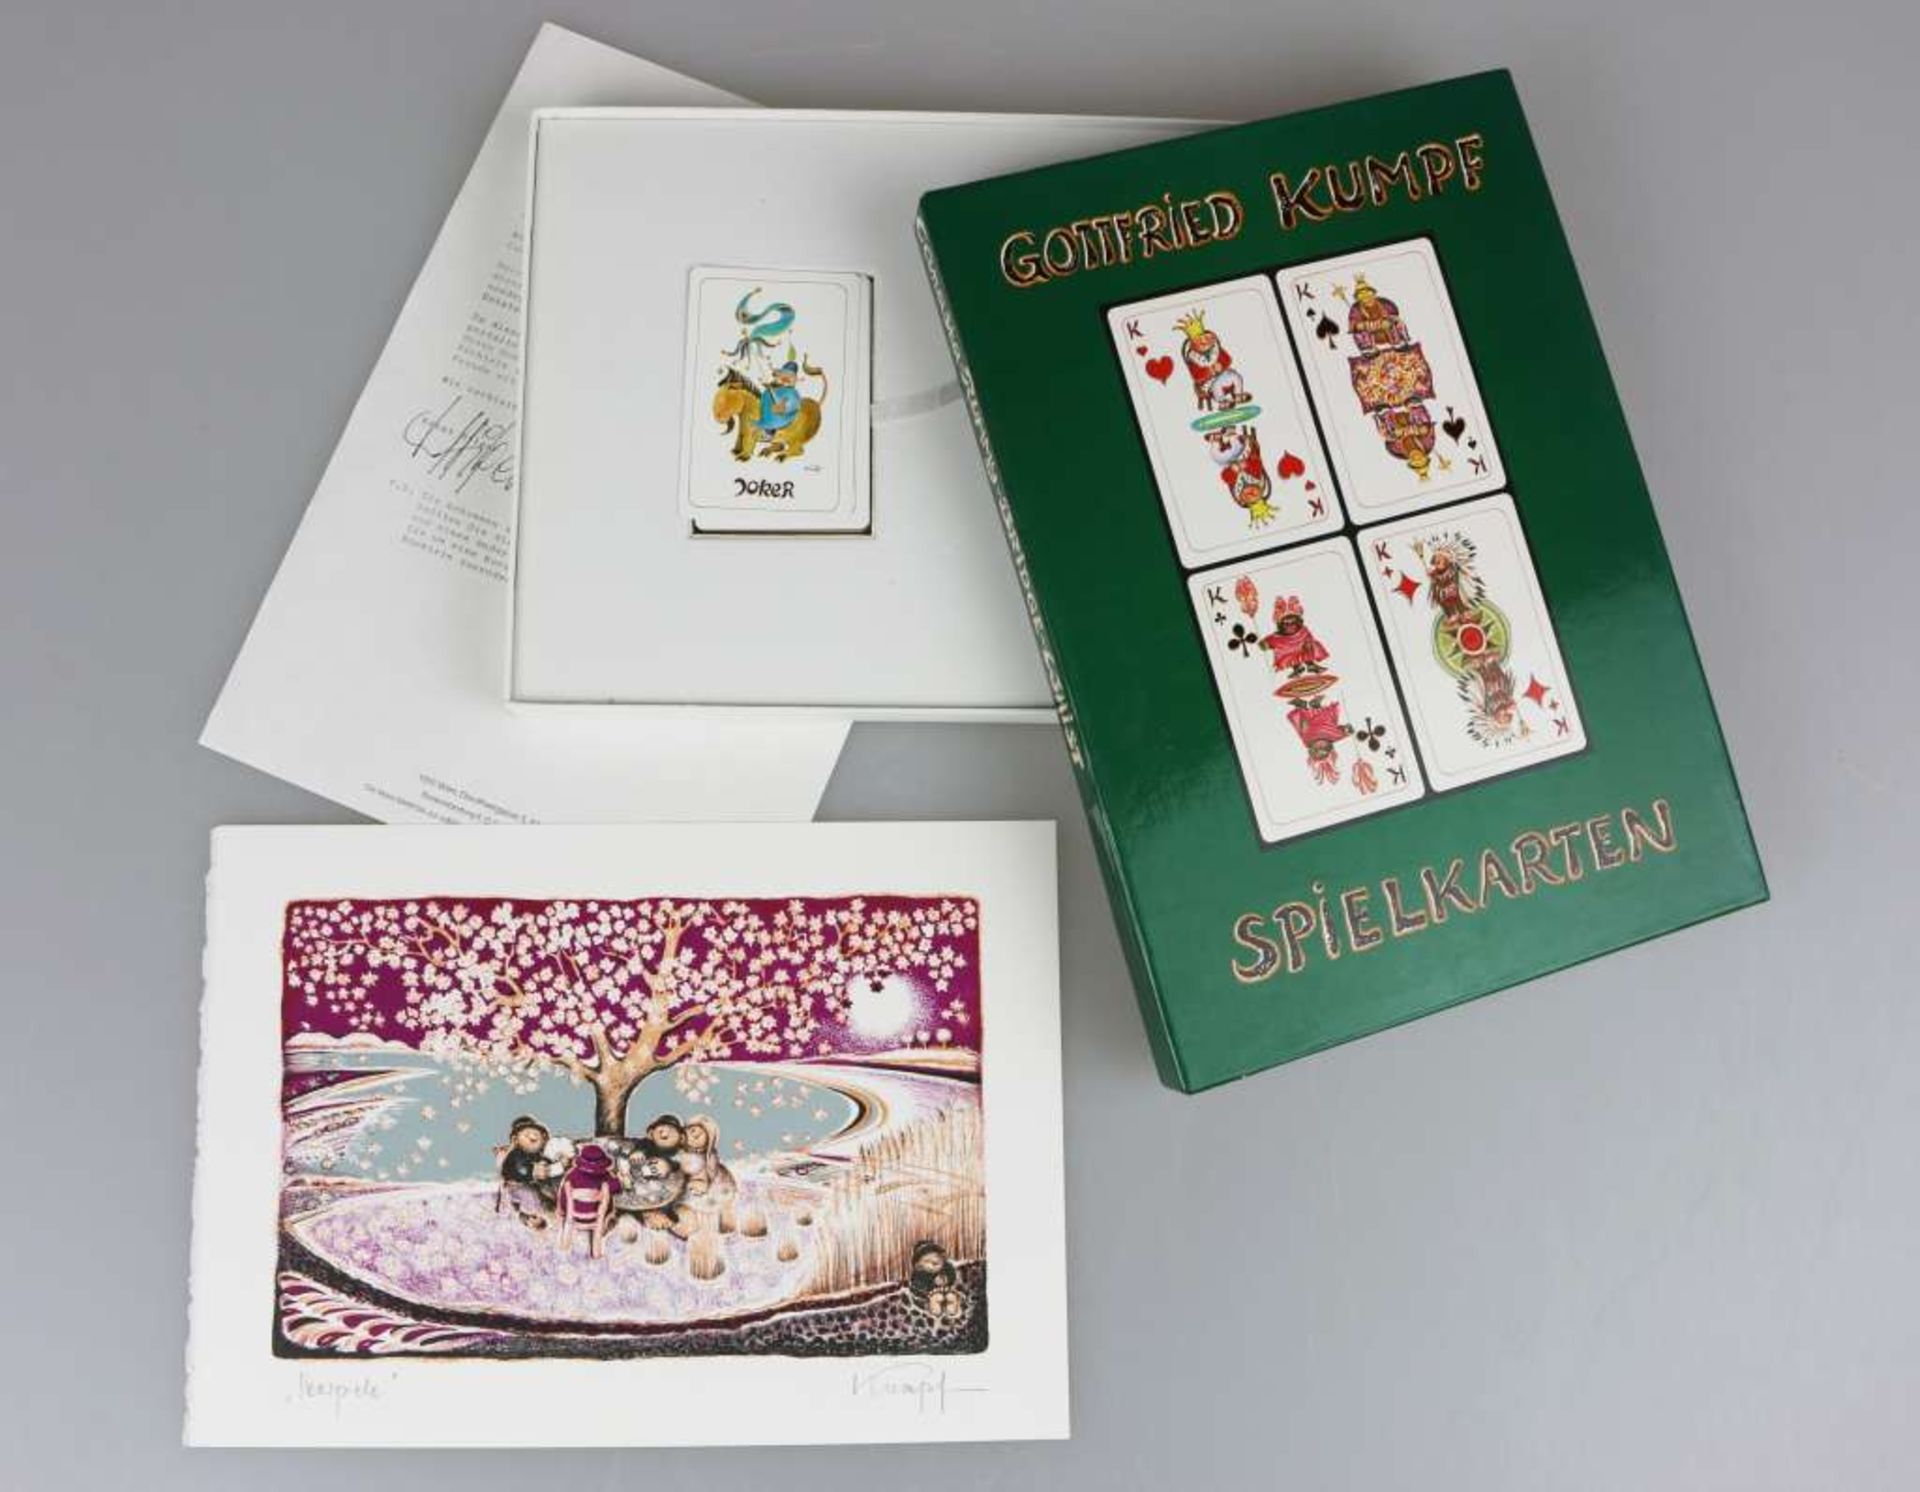 Gottfried KUMPF (1930), Spielkarten mit Farblithographie "Seespiele", 1984, betitelt, u.li. han